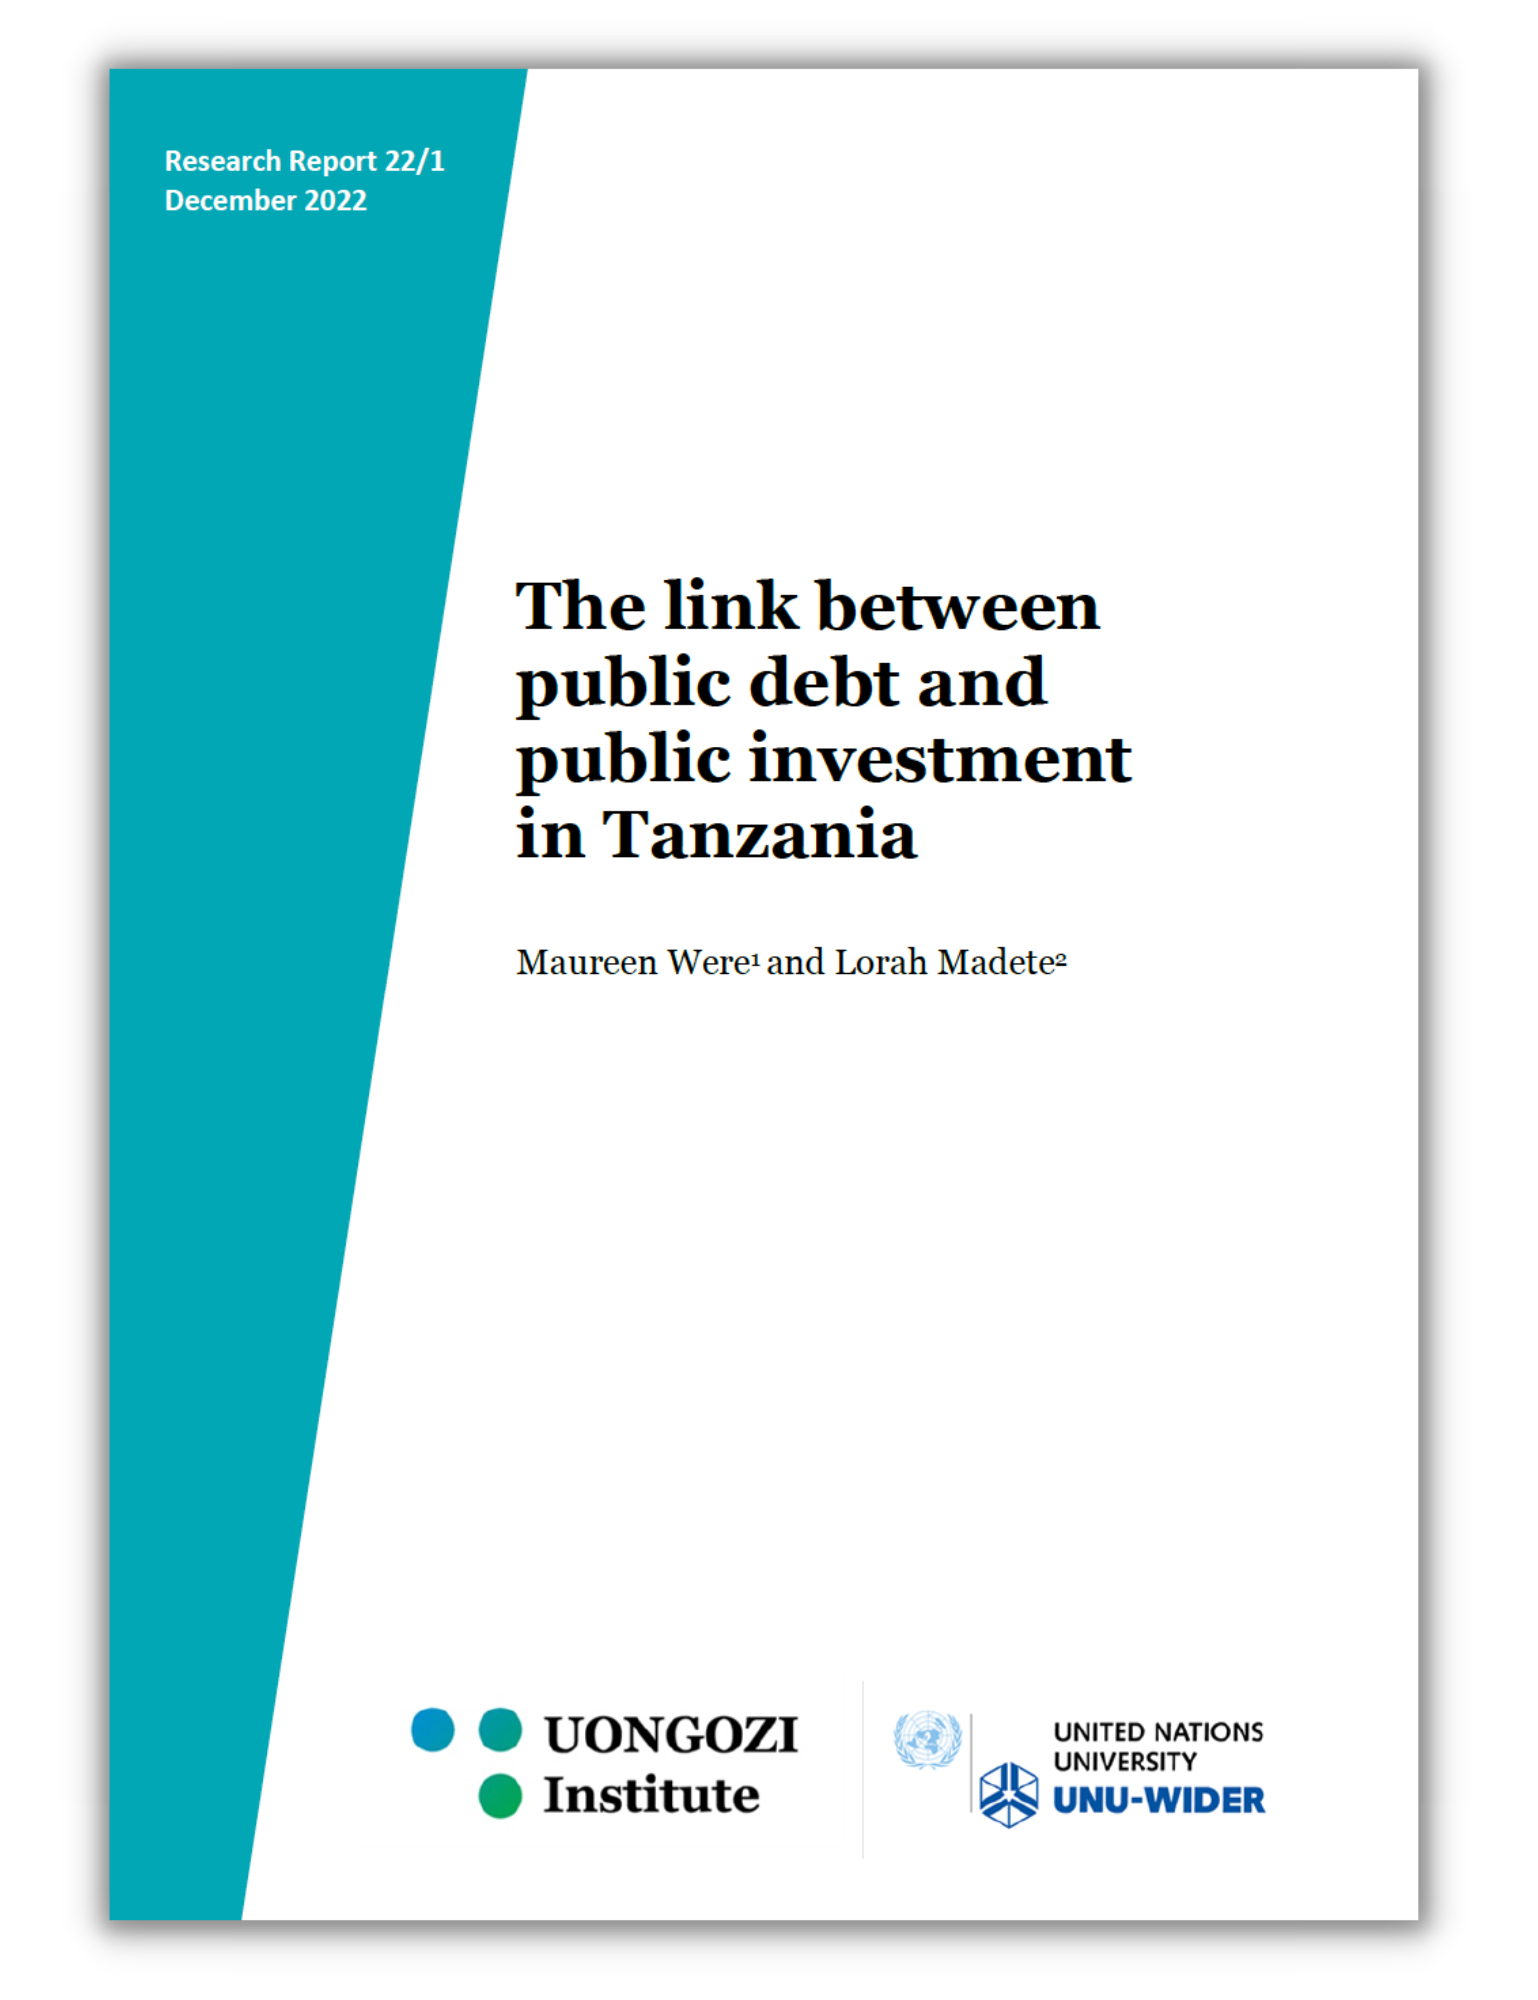 Public debt & public investment